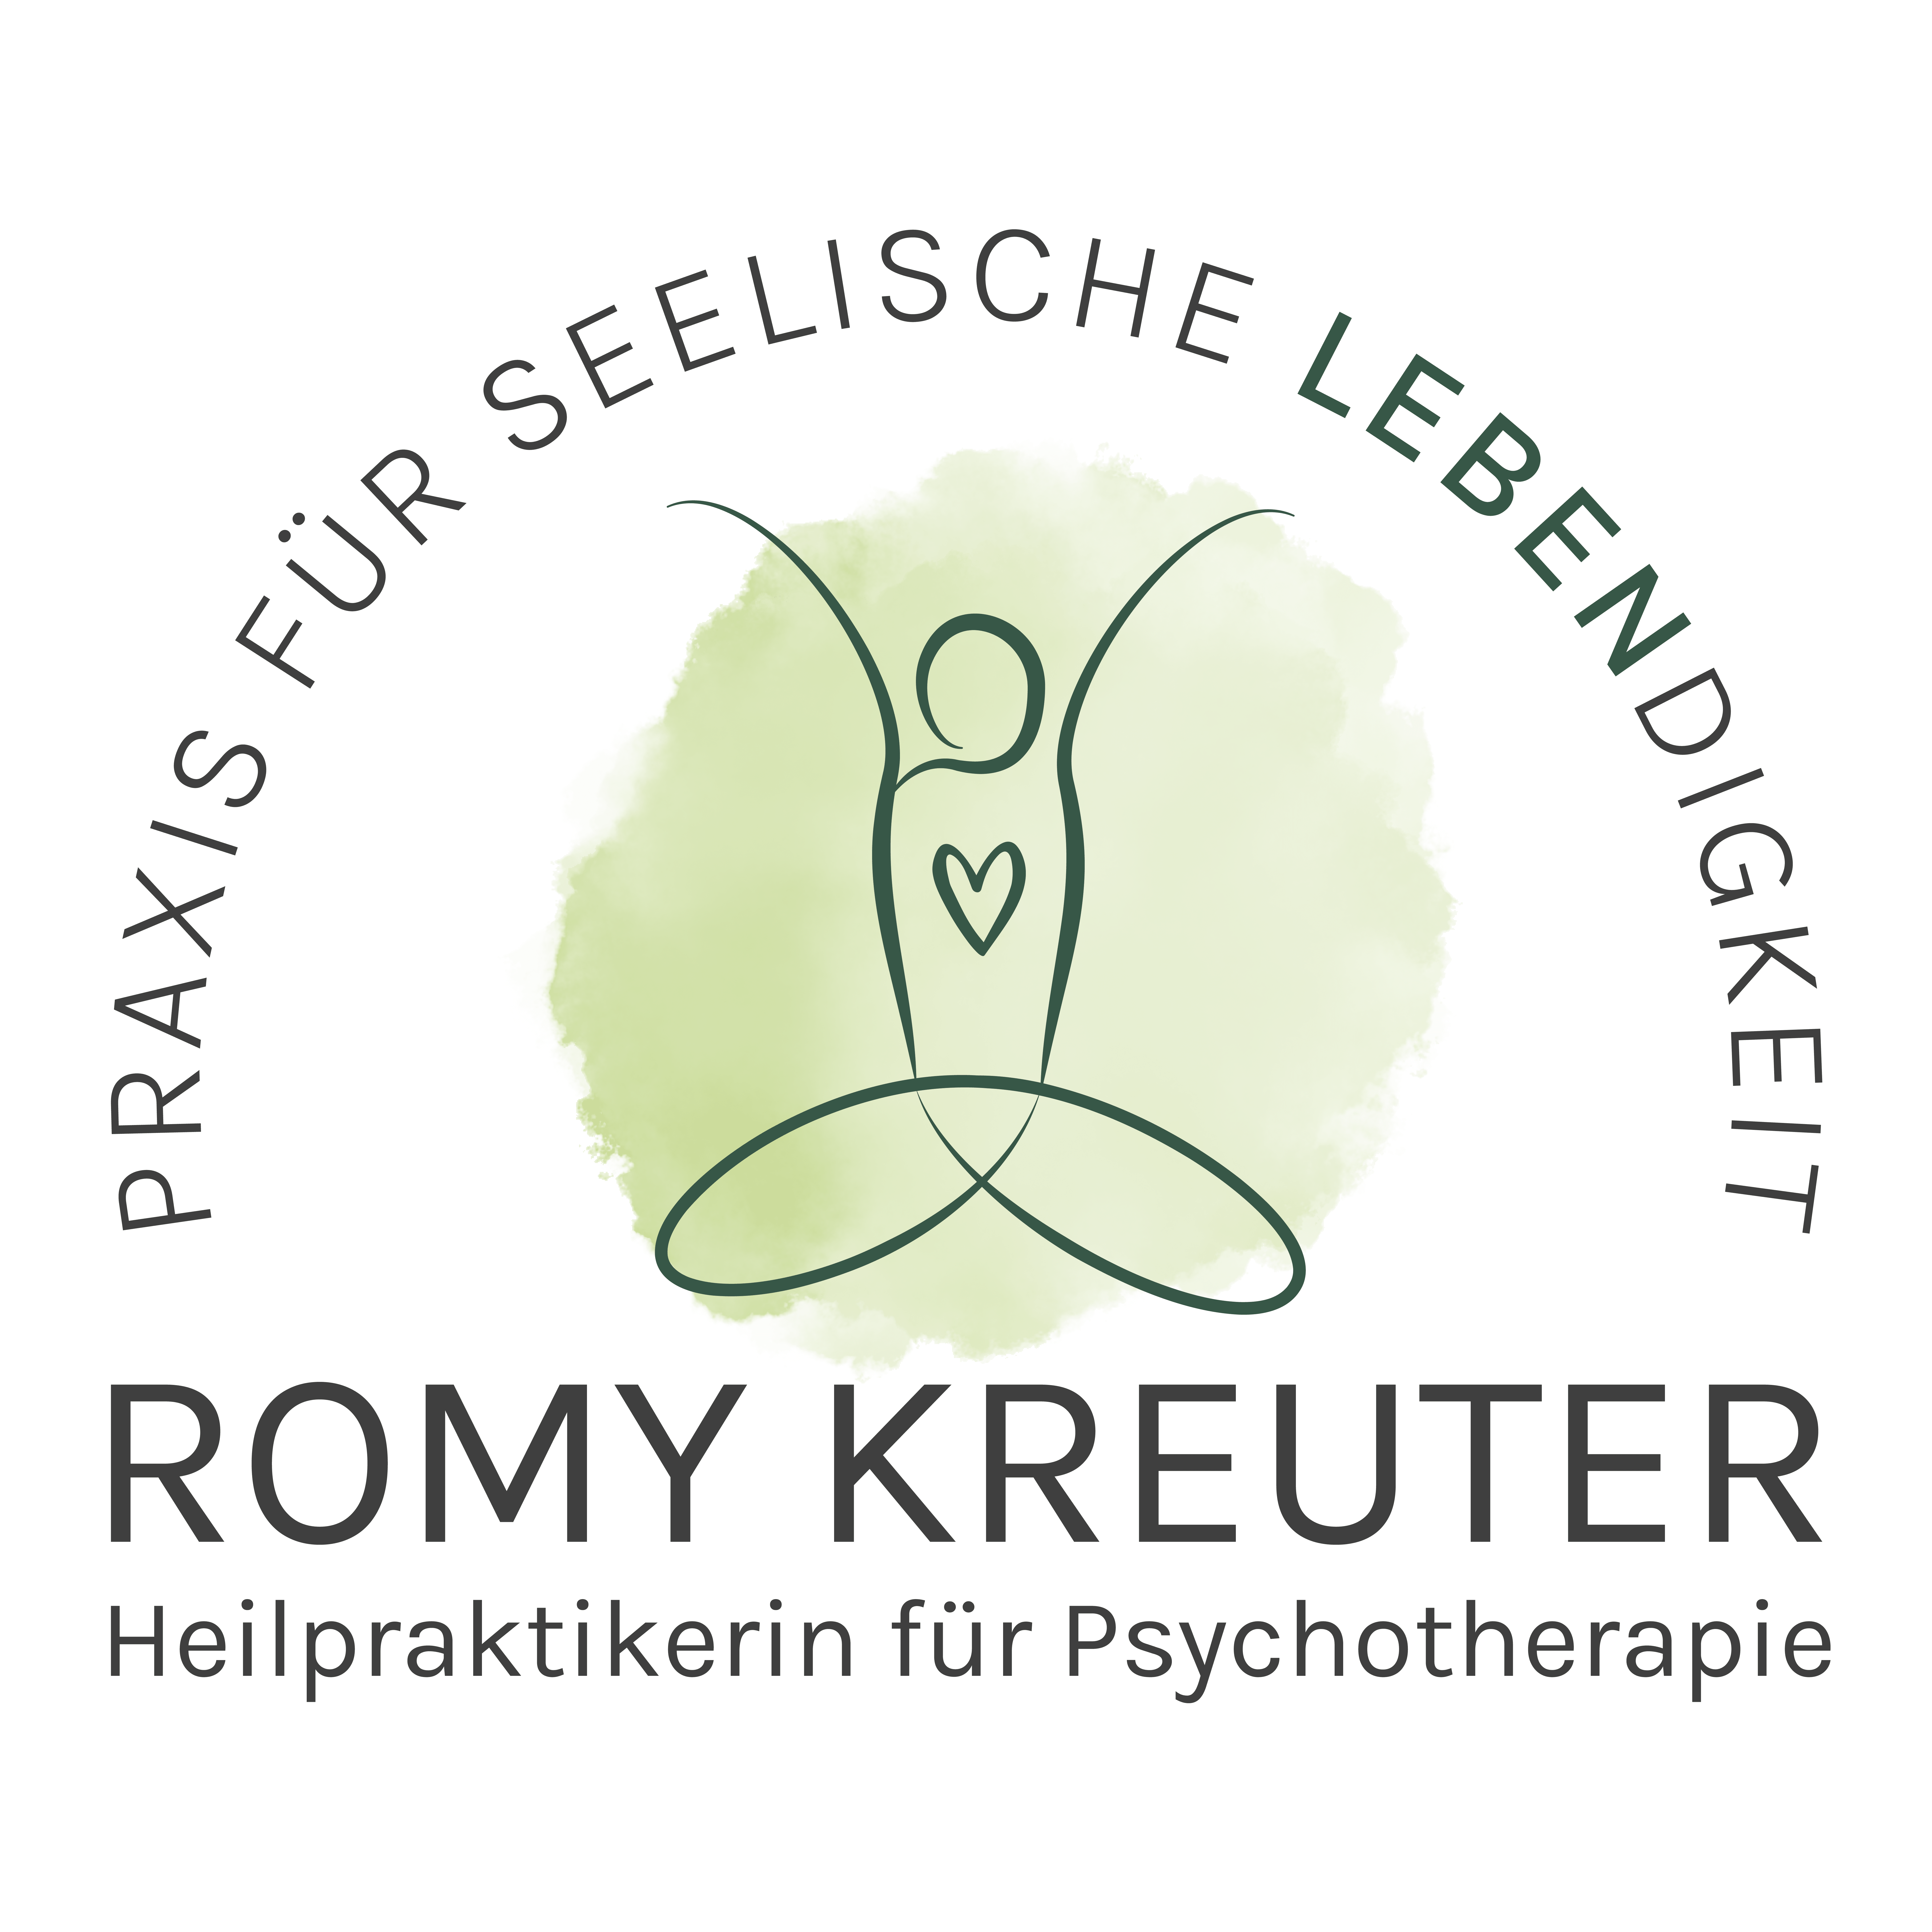 Romy Kreuter